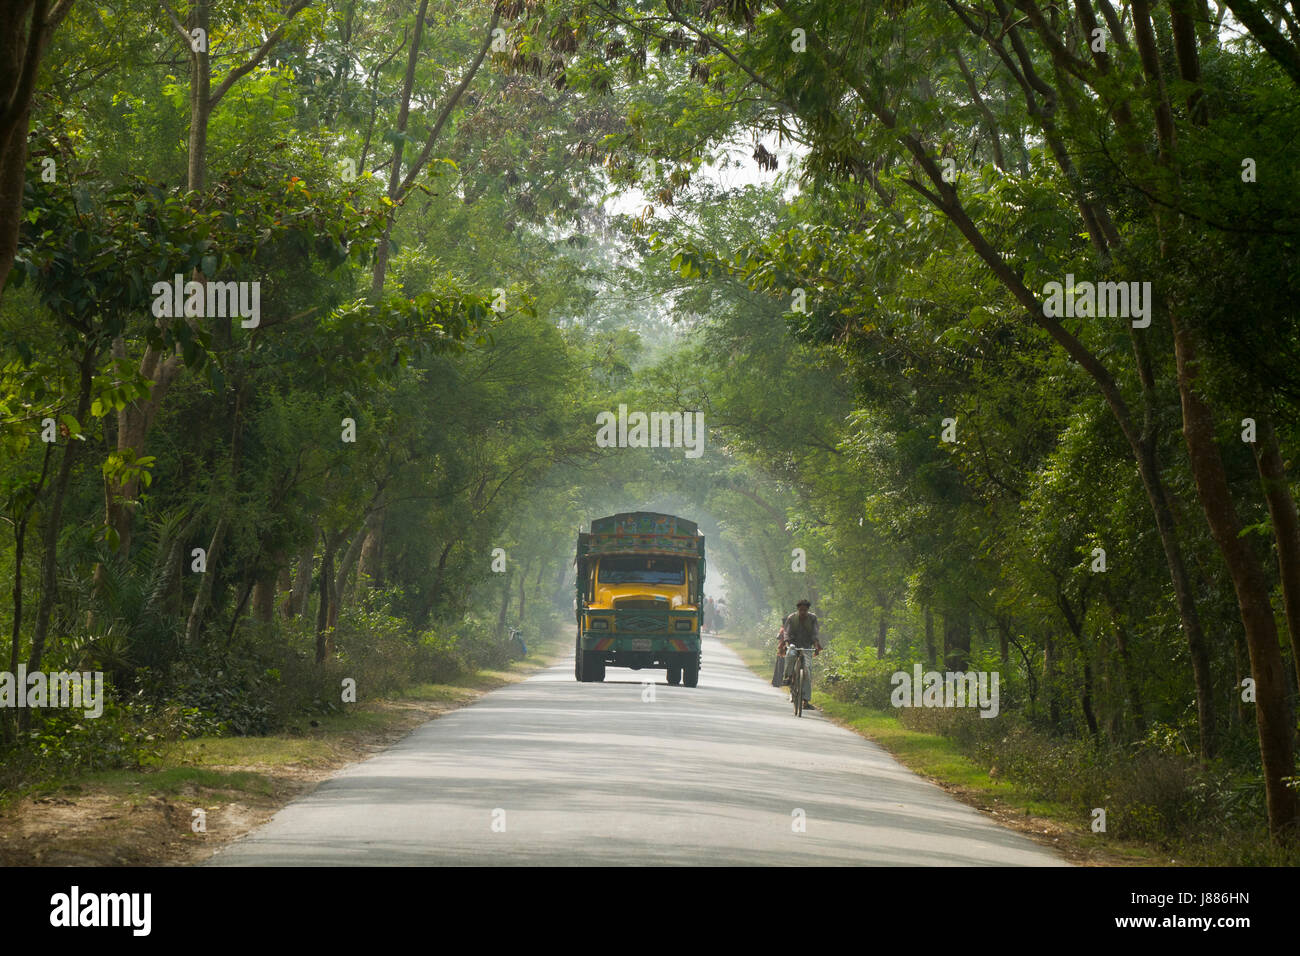 Kushtia-Meherpur highway. Meherpur, Bangladesh Stock Photo